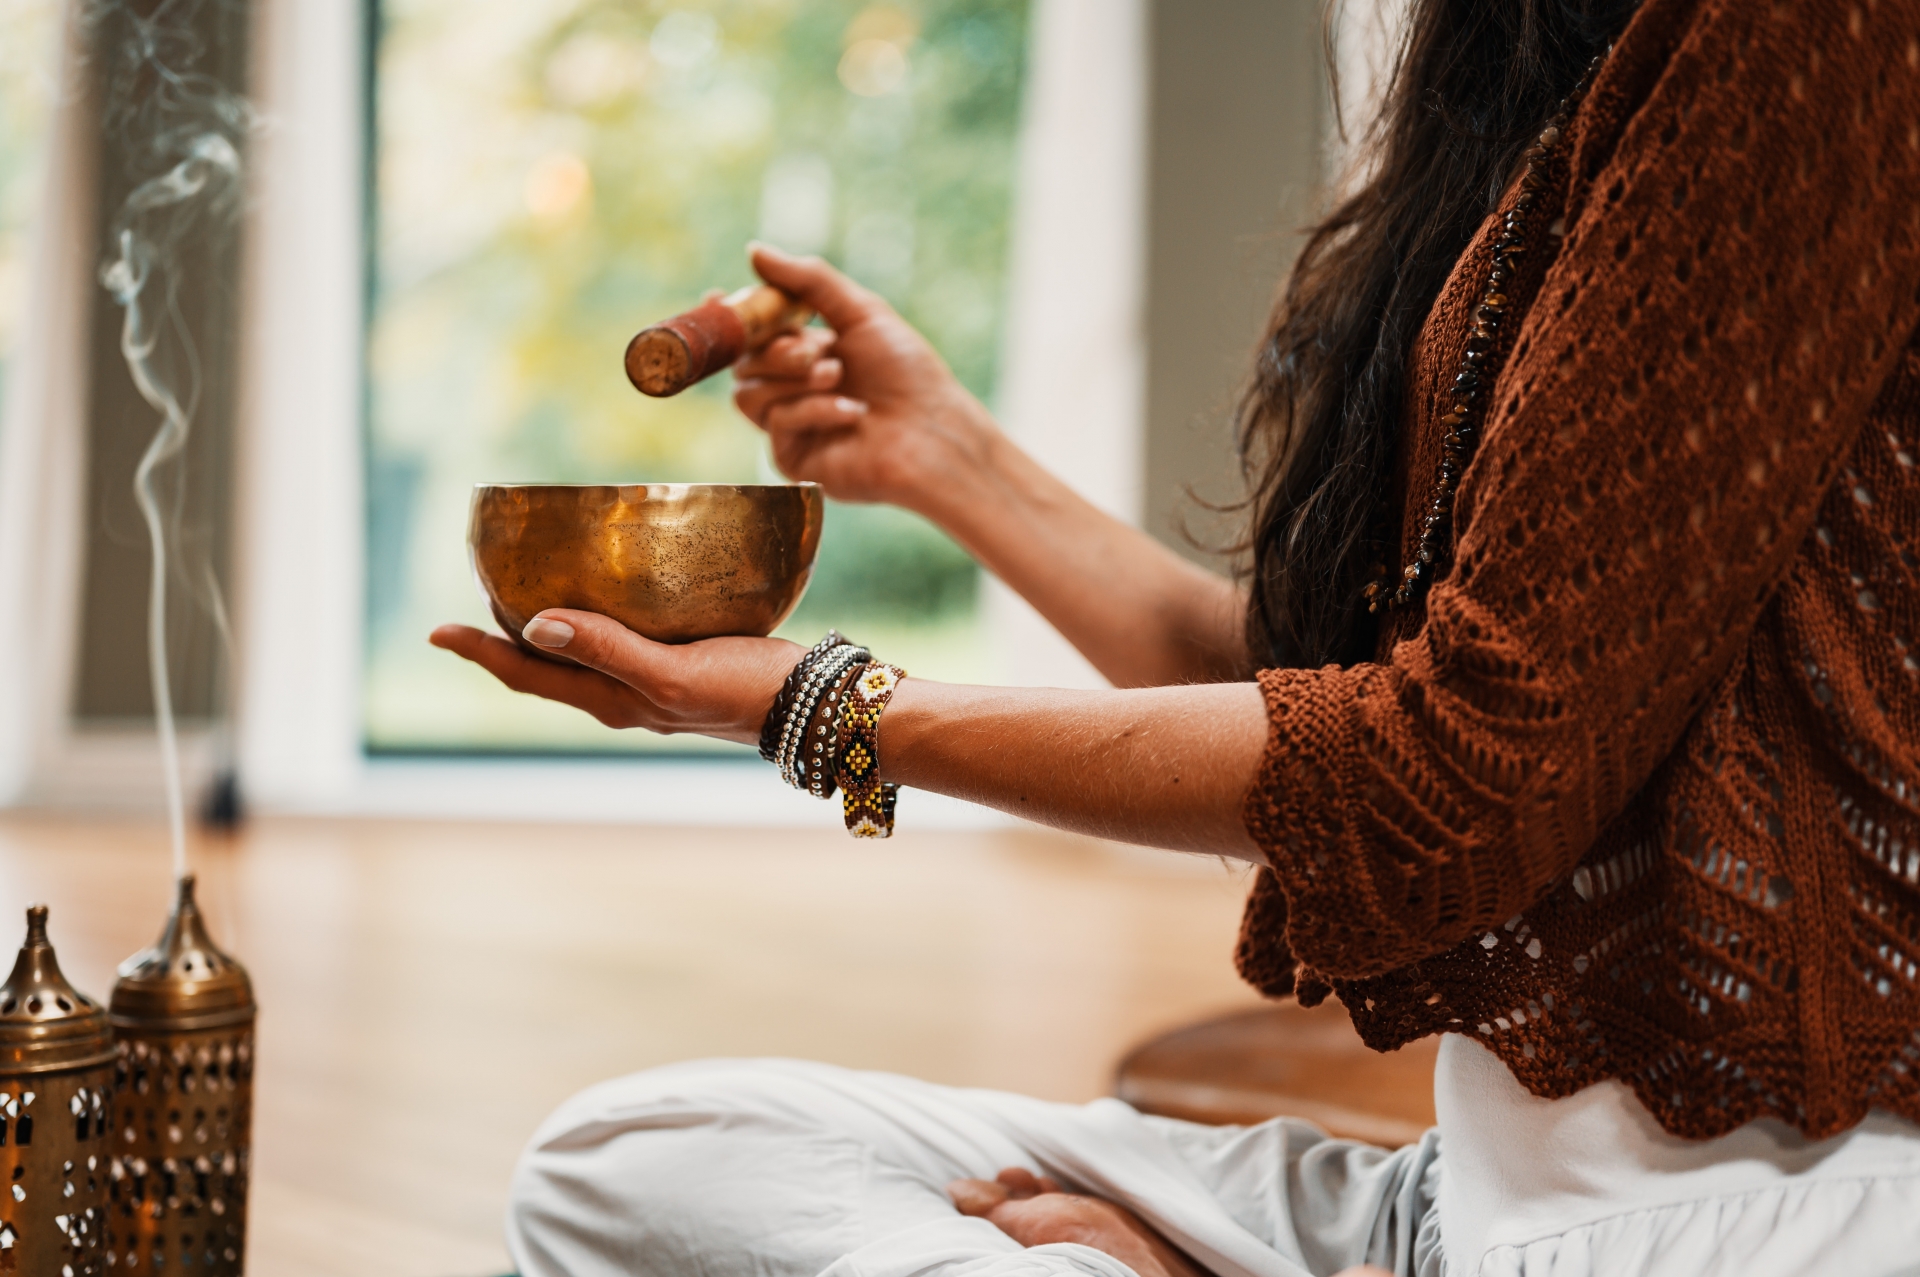 Come funziona la Meditazione?